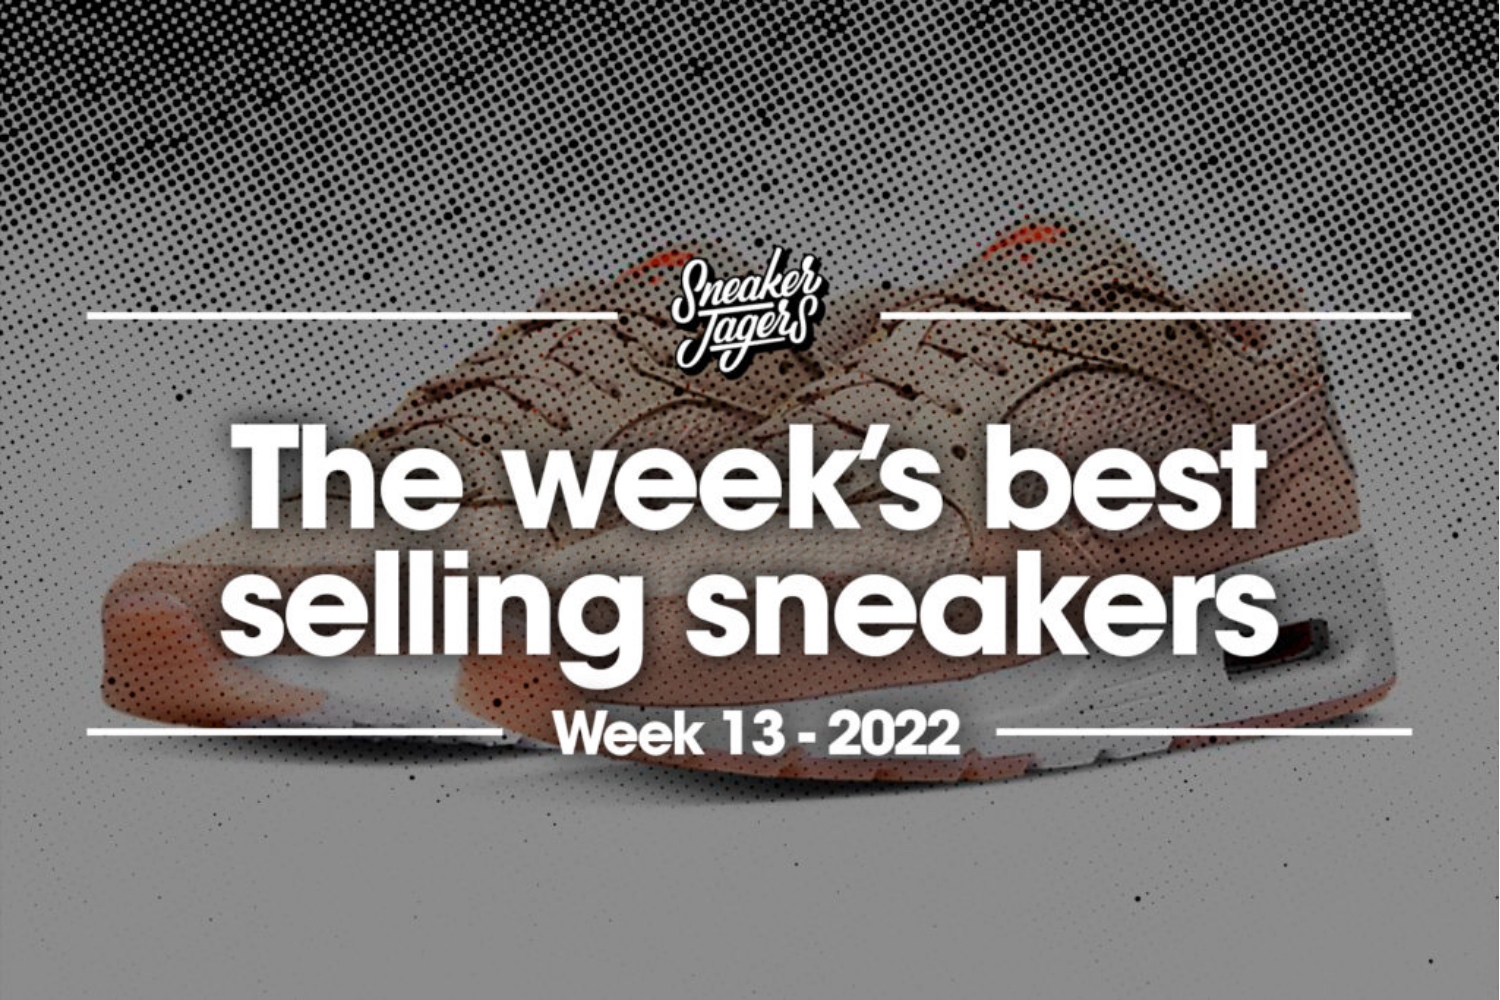 The 5 best-selling sneakers of week 13